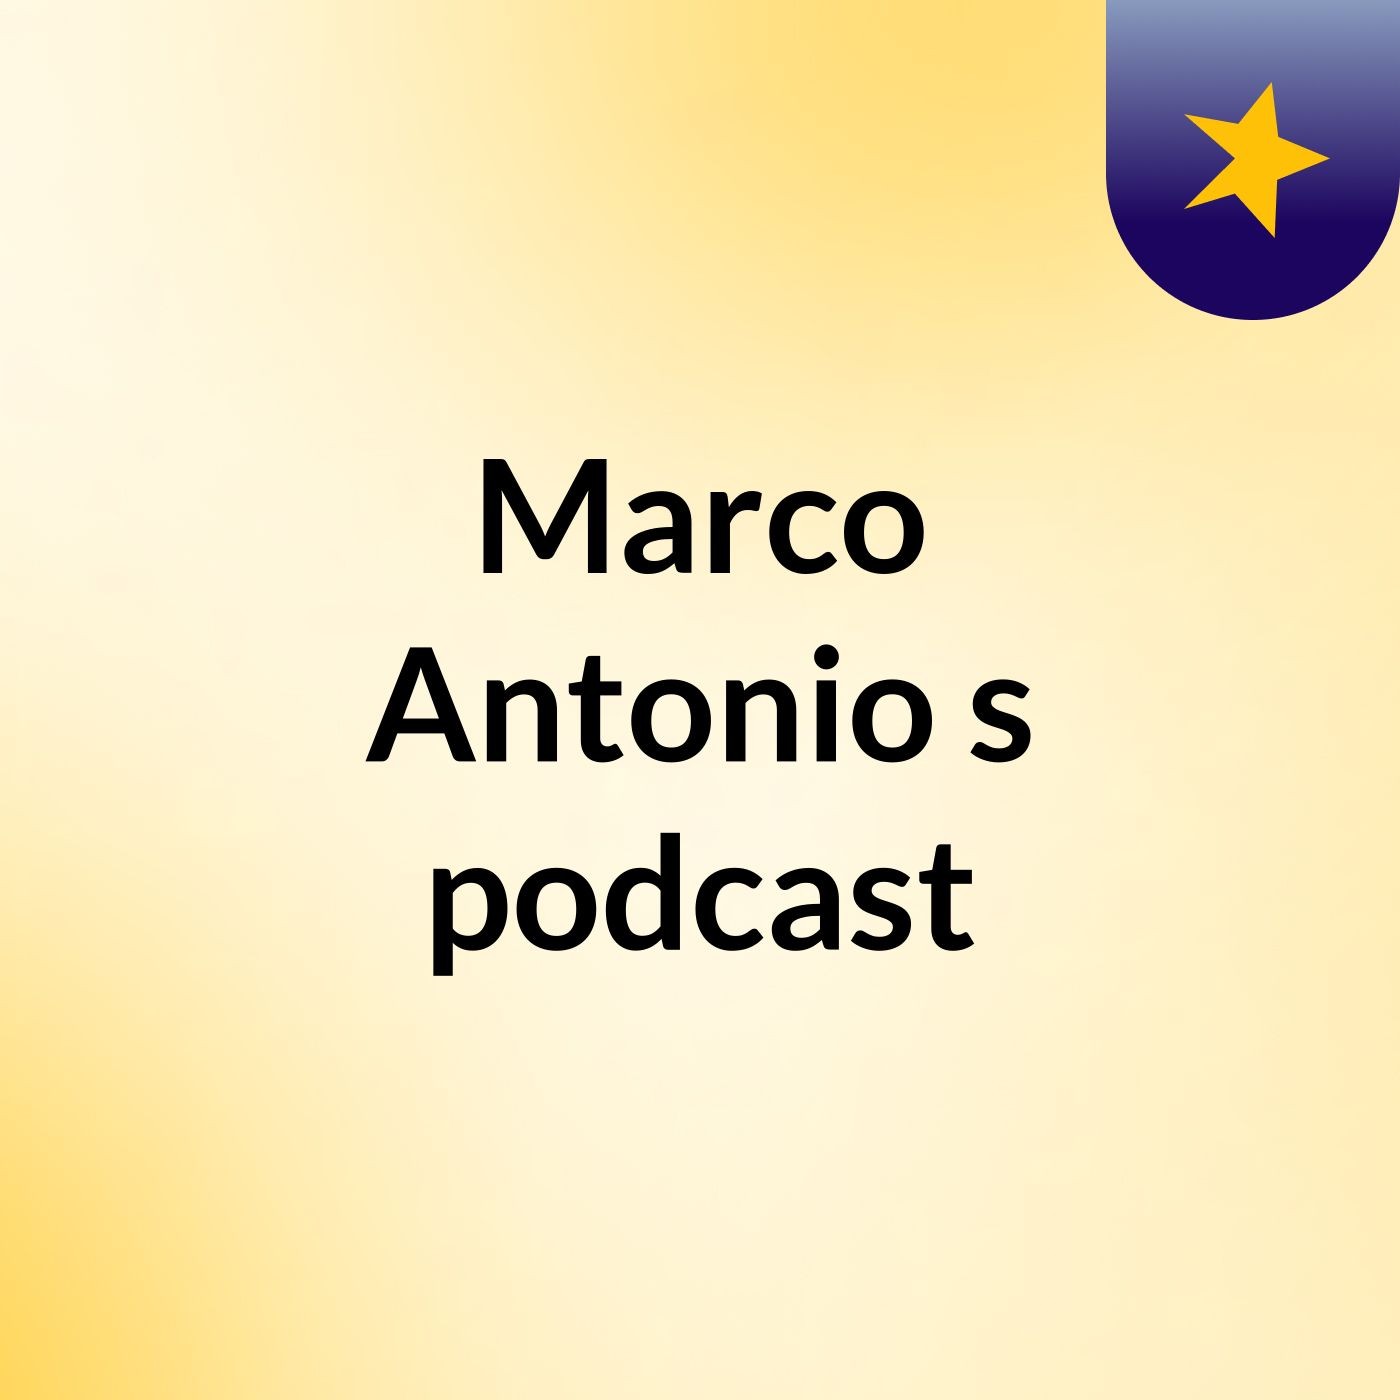 Marco Antonio's podcast